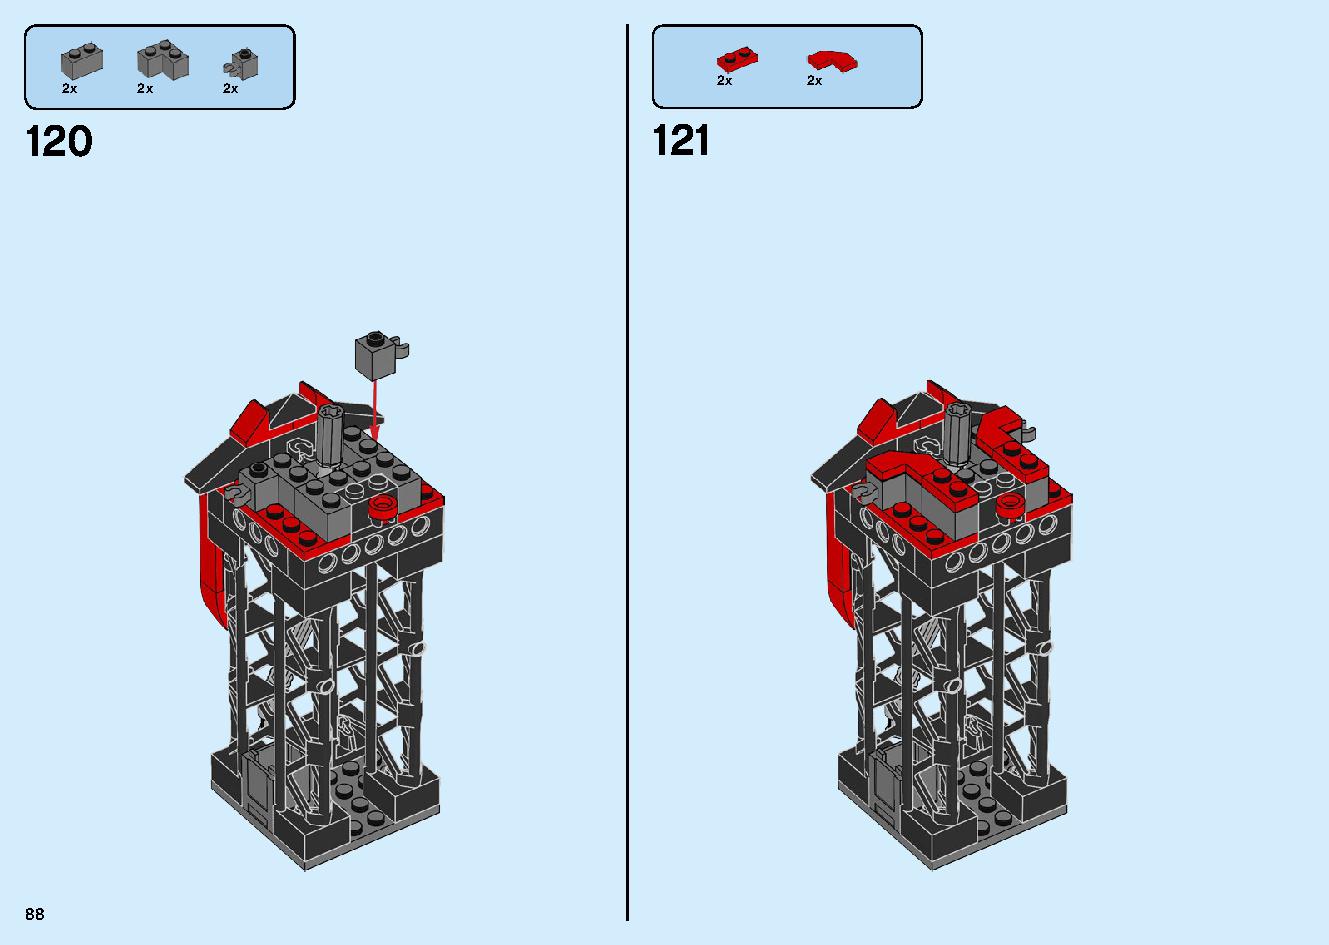 マッドキング神殿 71712 レゴの商品情報 レゴの説明書・組立方法 88 page